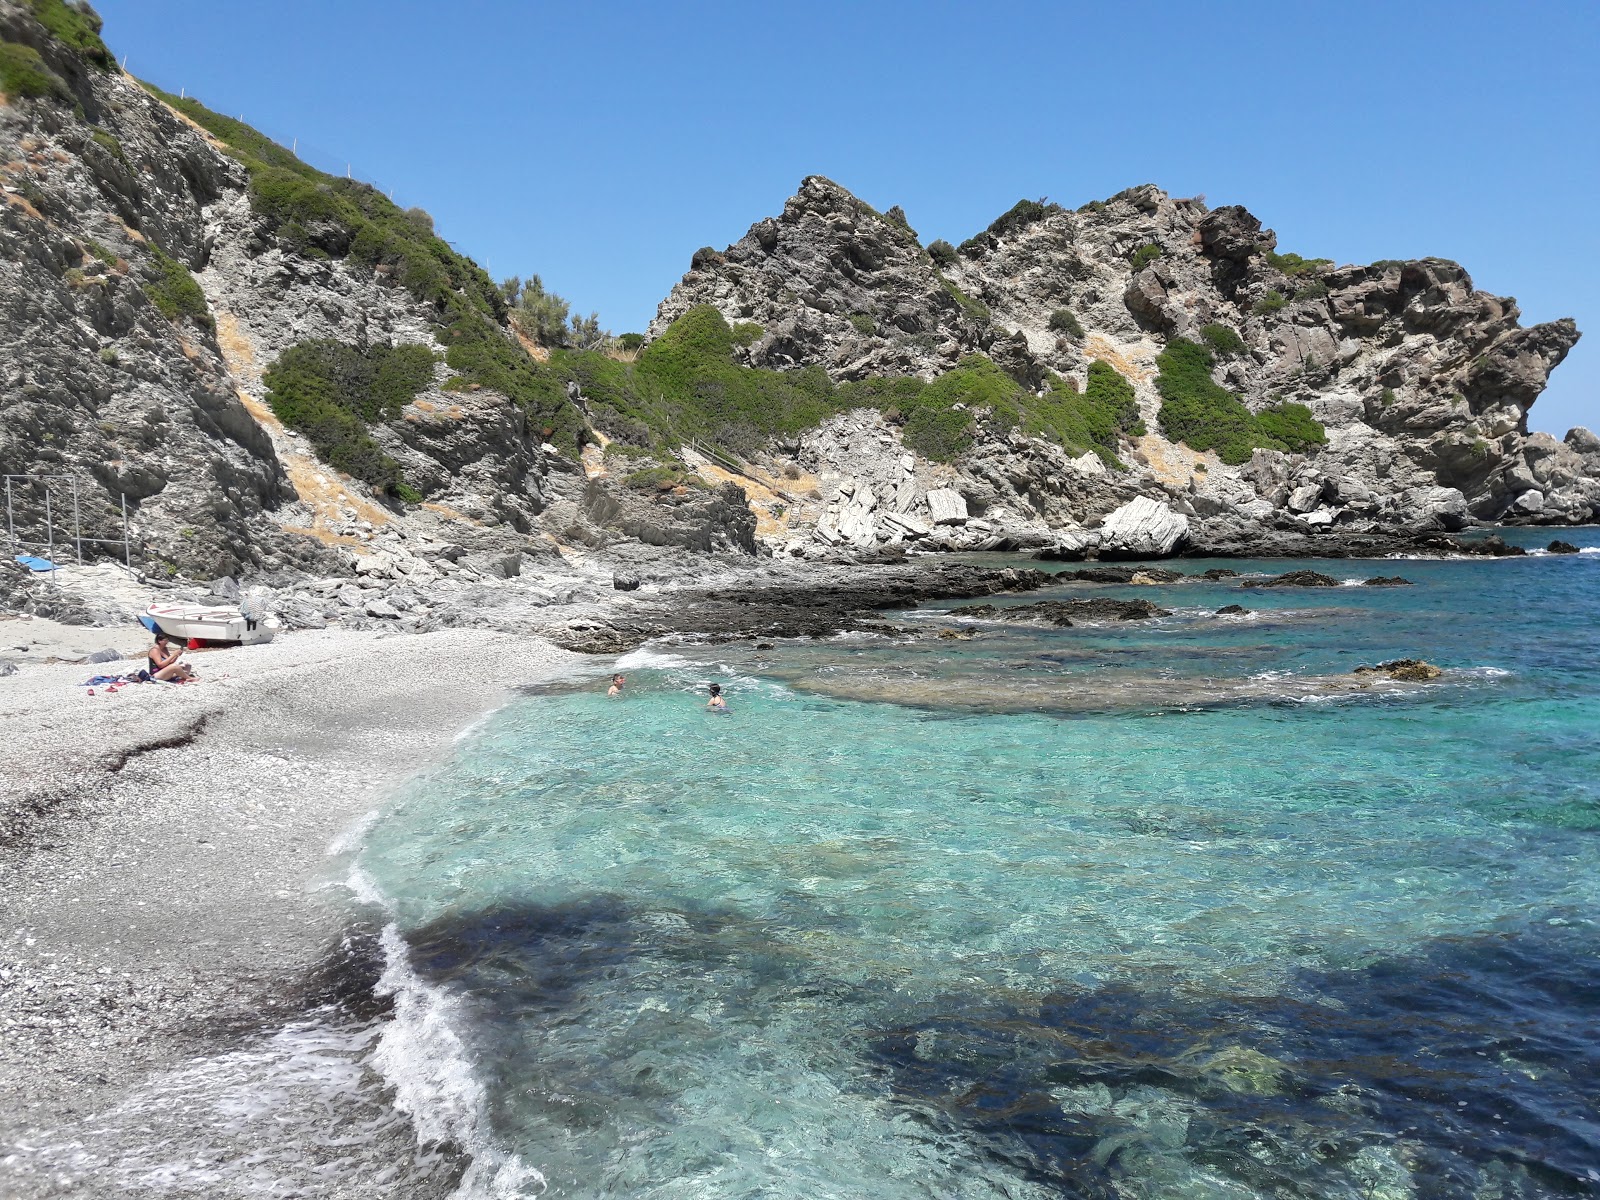 Trachelos beach'in fotoğrafı hafif ince çakıl taş yüzey ile